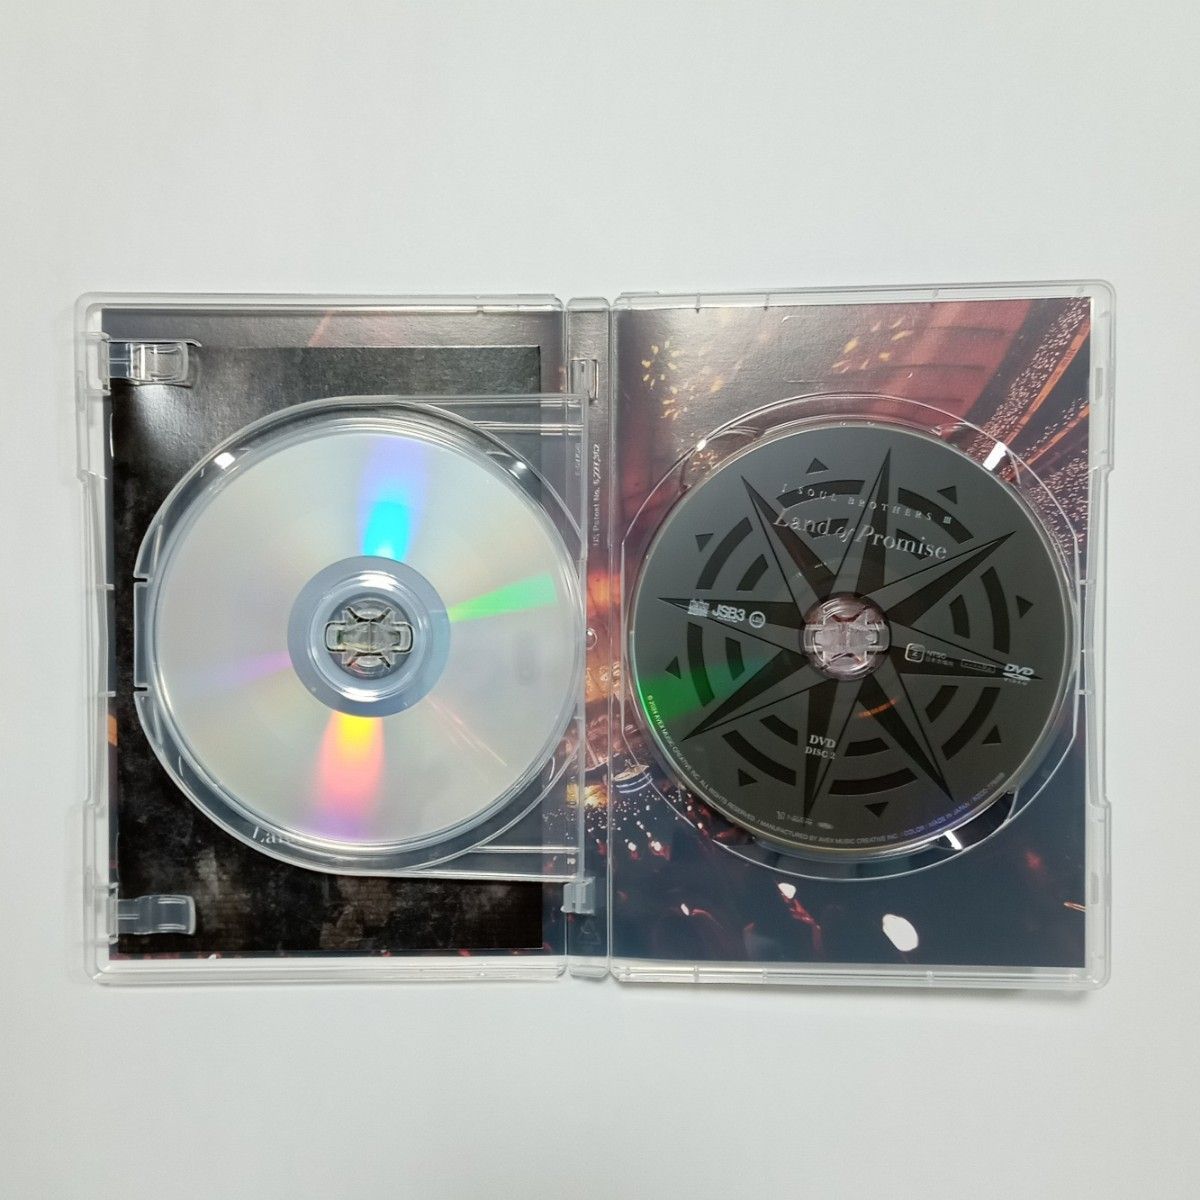 三代目 J SOUL BROTHERS  Land of Promise アルバム CD DVD フォトブック